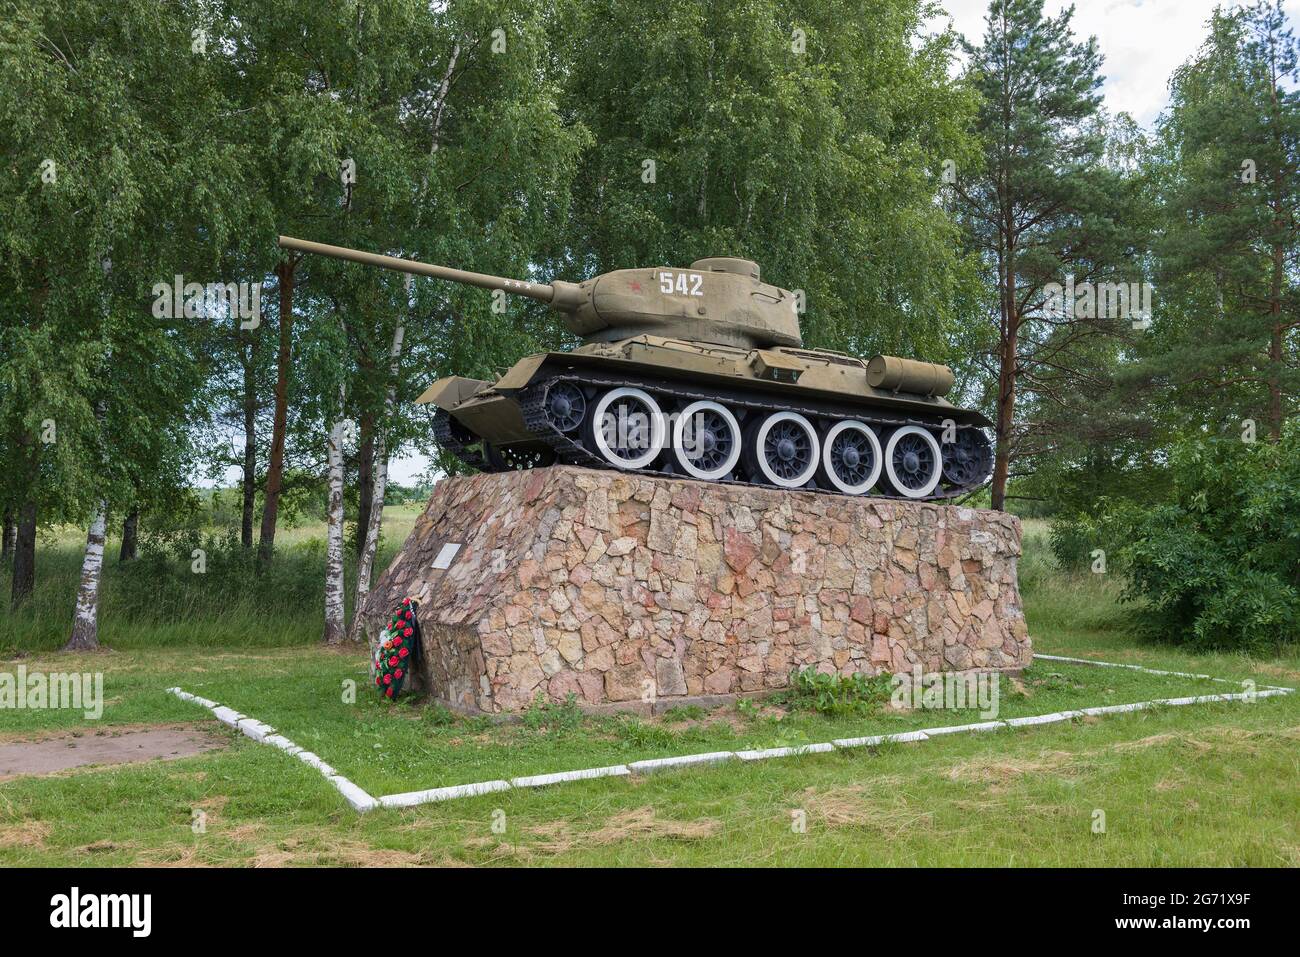 STARAYA RUSSA, RUSSLAND - 04. JULI 2020: Sowjetischer Panzer T-34-85 - ein Denkmal zu Ehren der Befreiung der Stadt Staraya Russa von den deutschen Invasoren i. Stockfoto